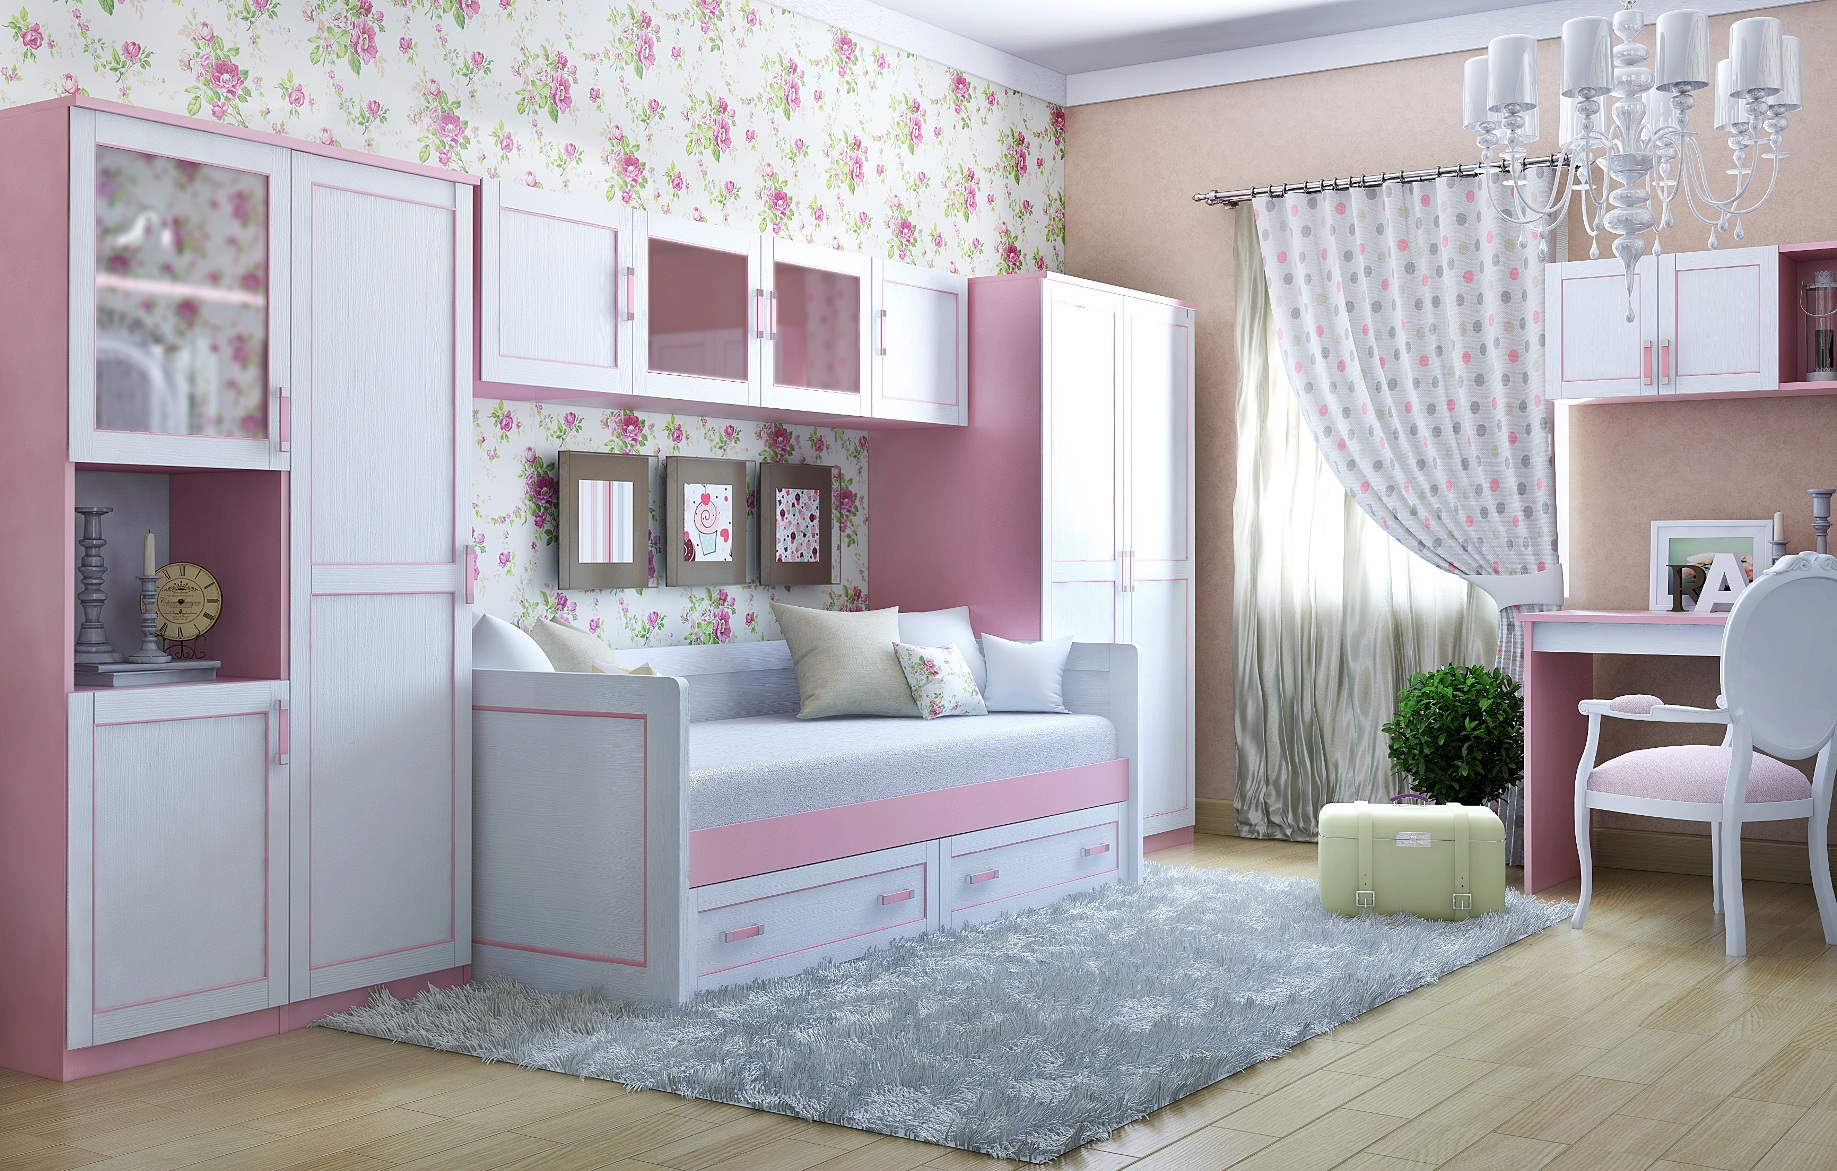 Детская спальня для девочки 5, 7 или 10 лет [47 фото], красивый дизайн интерьера с картинками